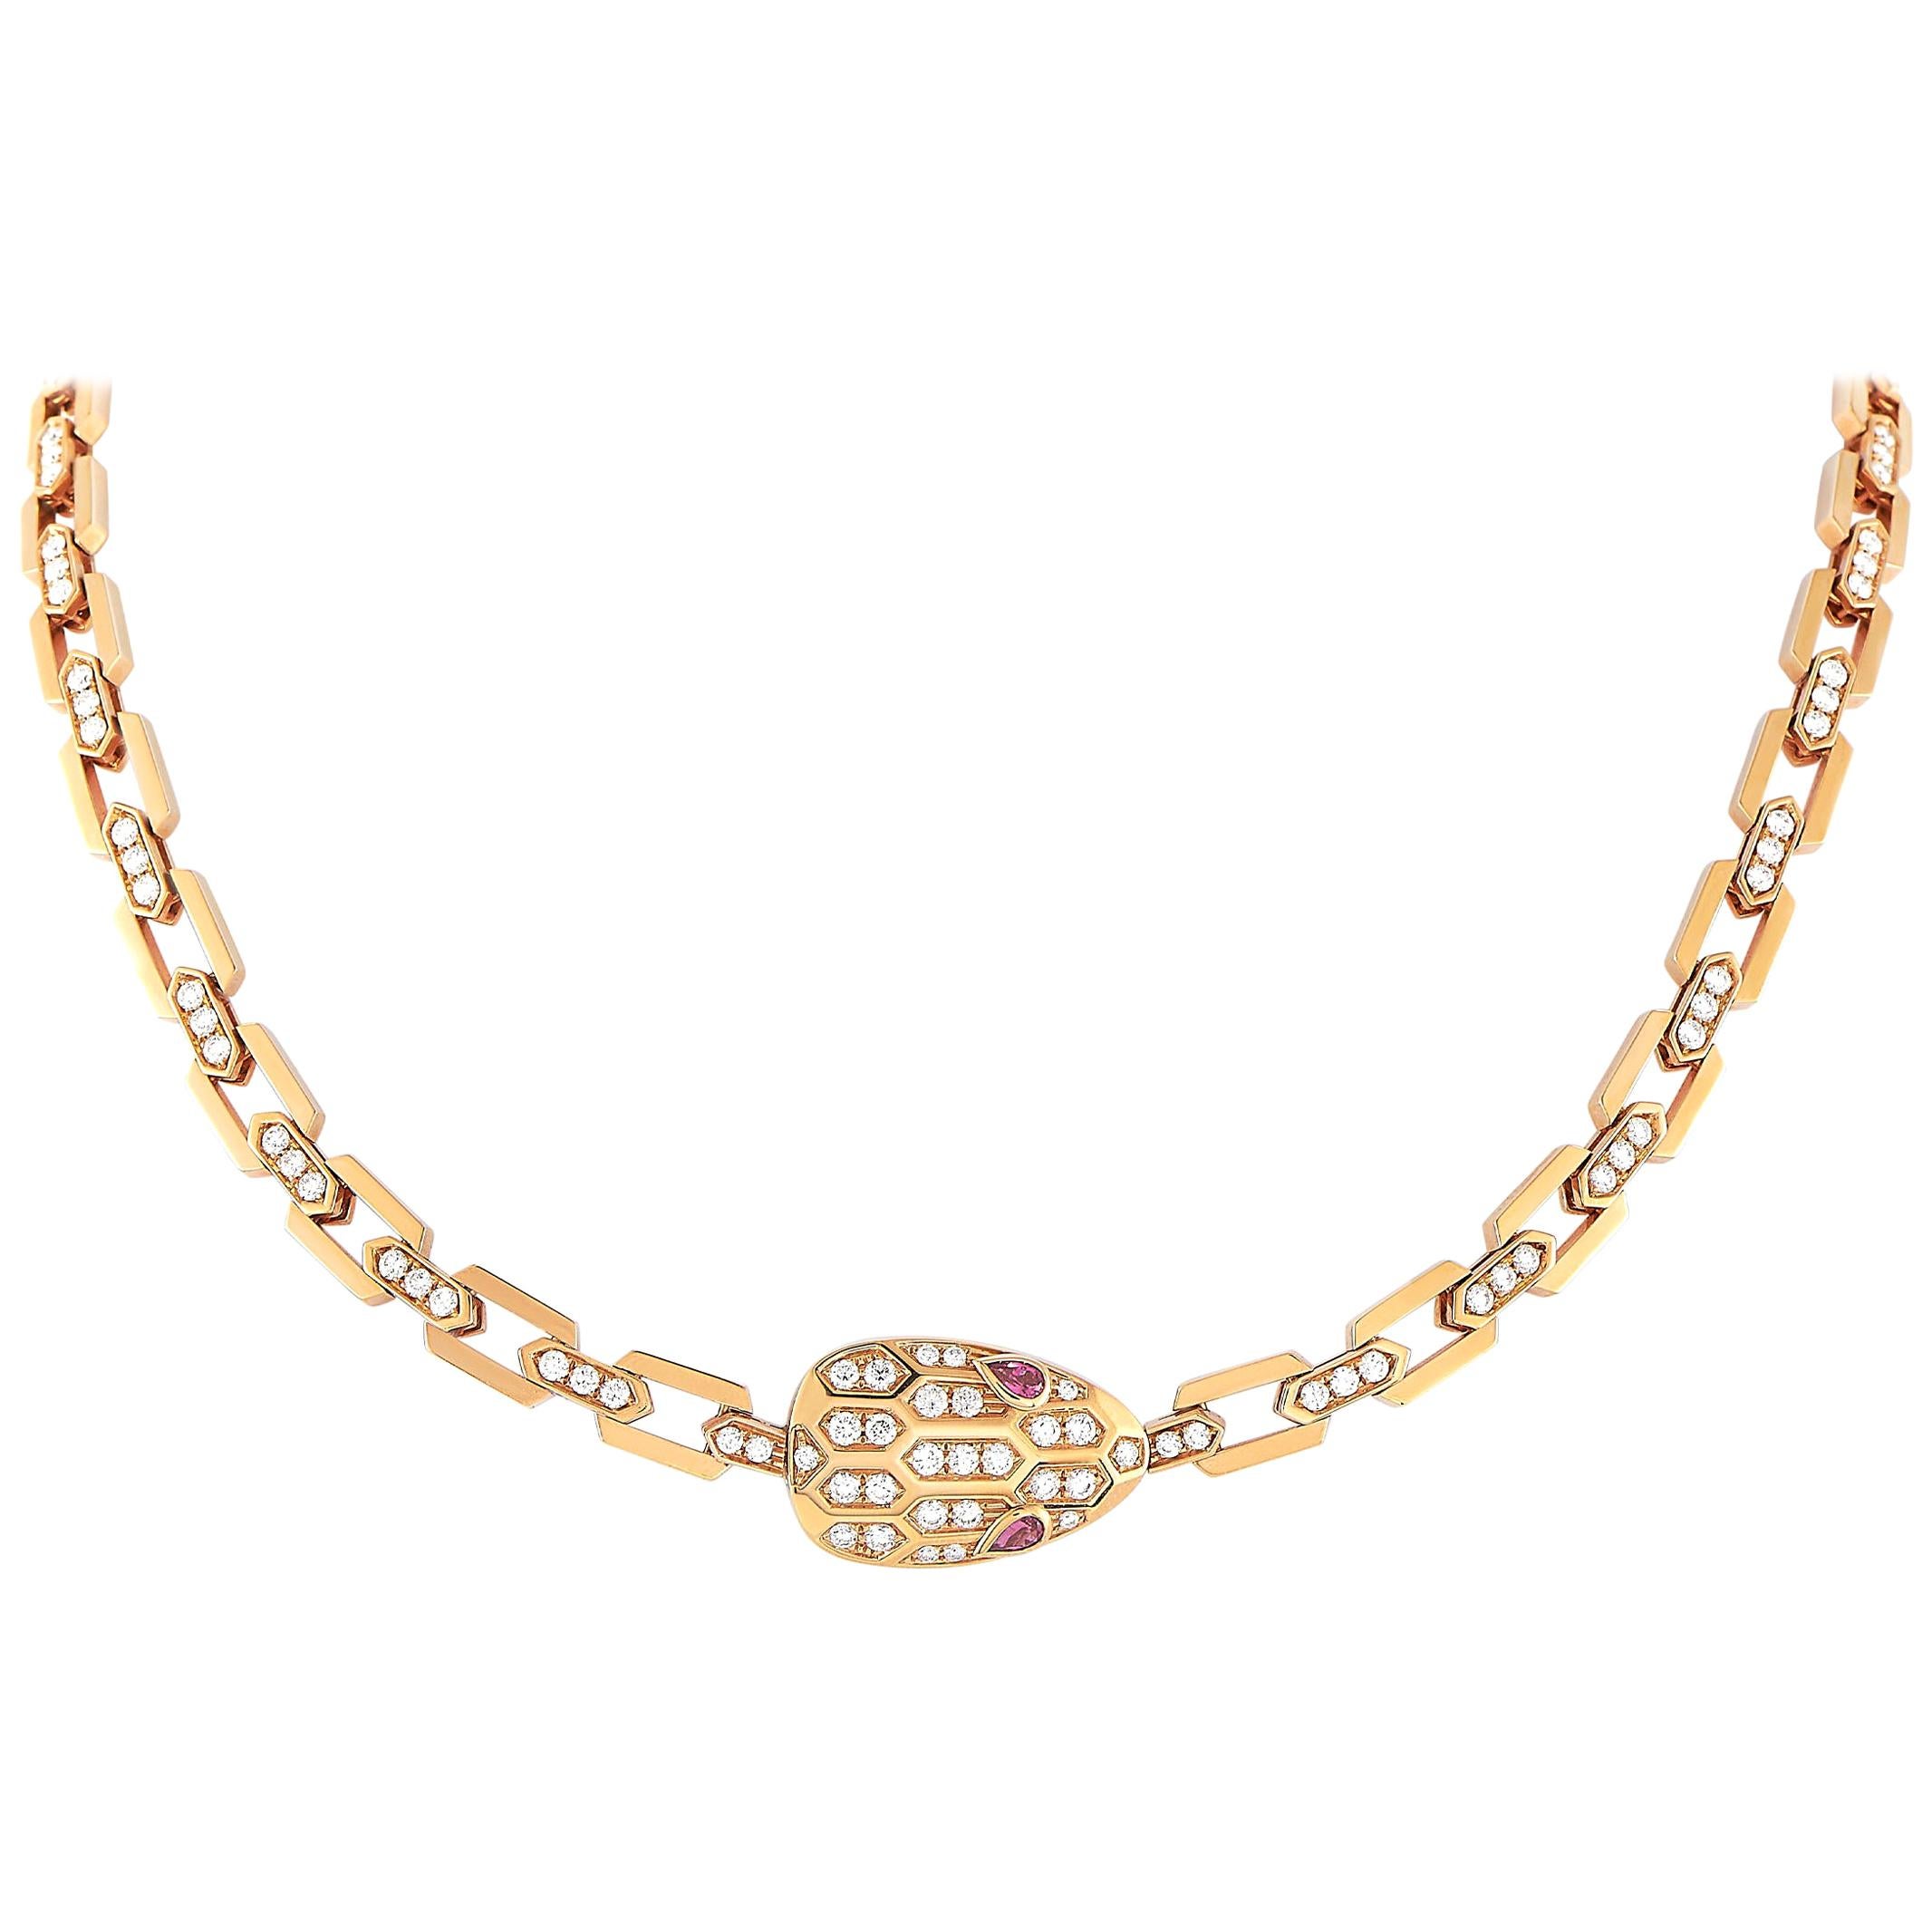 Bvlgari Serpenti 18 Karat Rose Gold 3.31 Carat Diamond Necklace